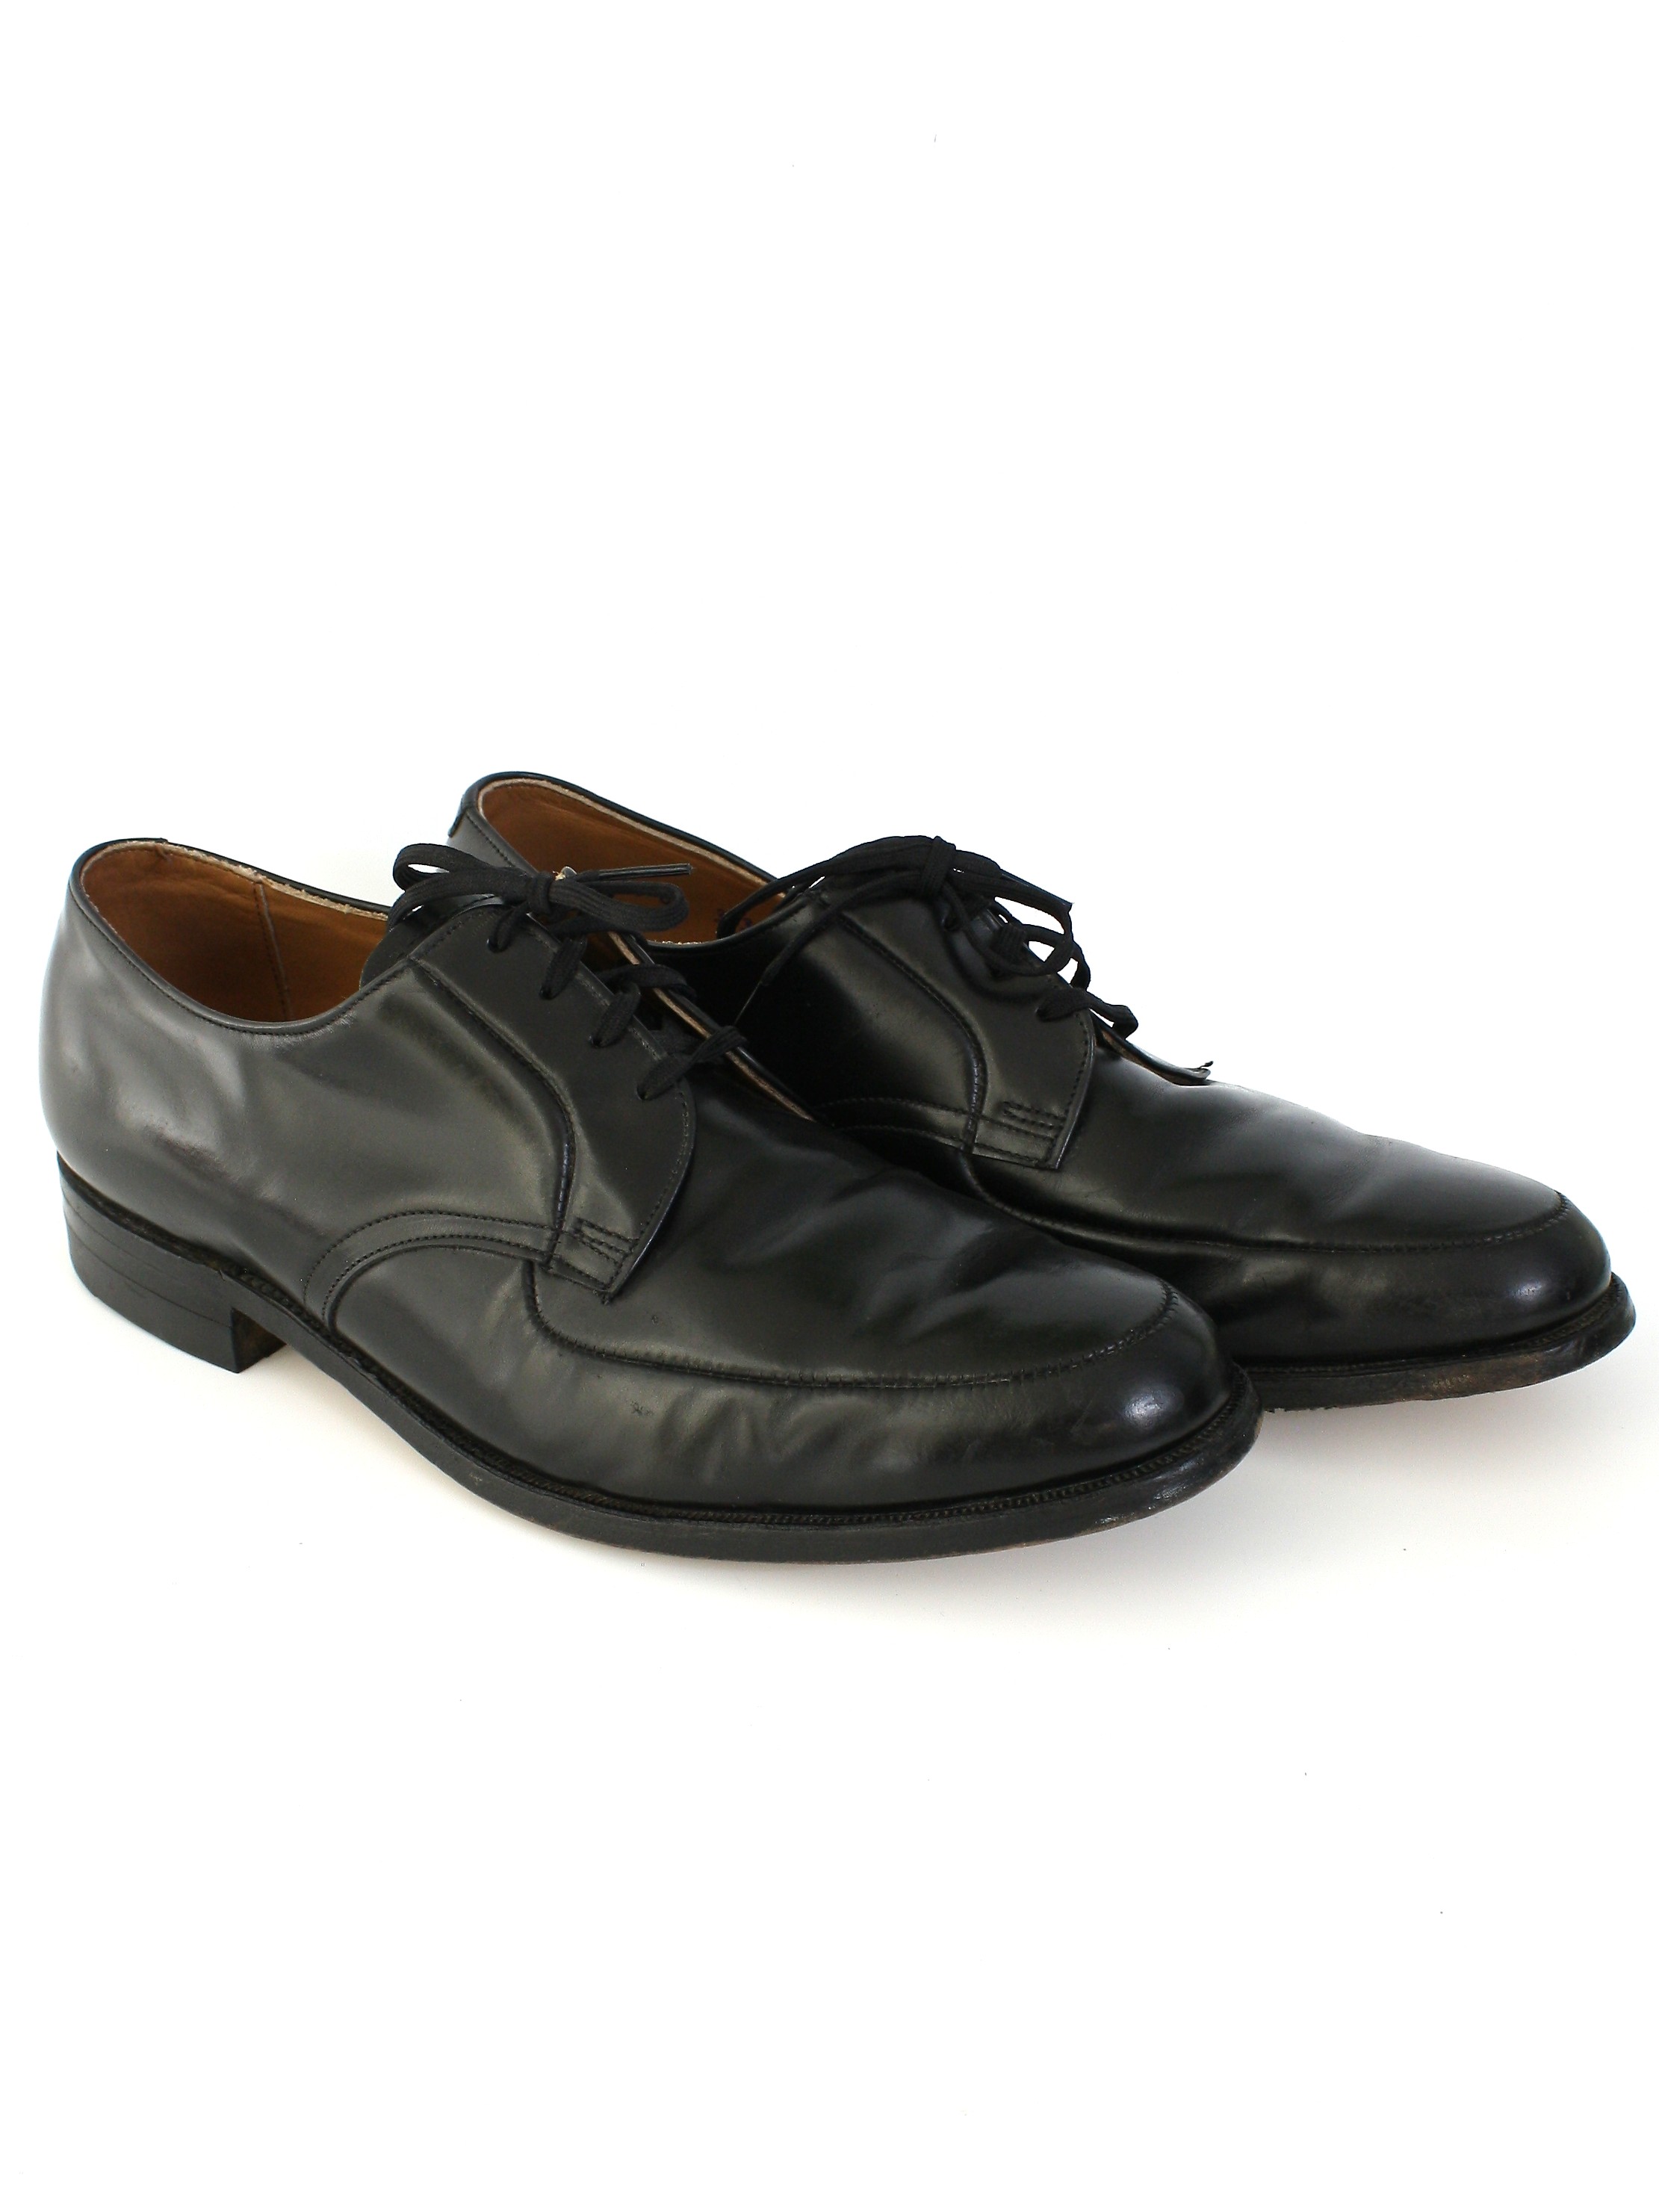 Retro 1960's Shoes (Executive Imperials) : 60s -Executive Imperials ...